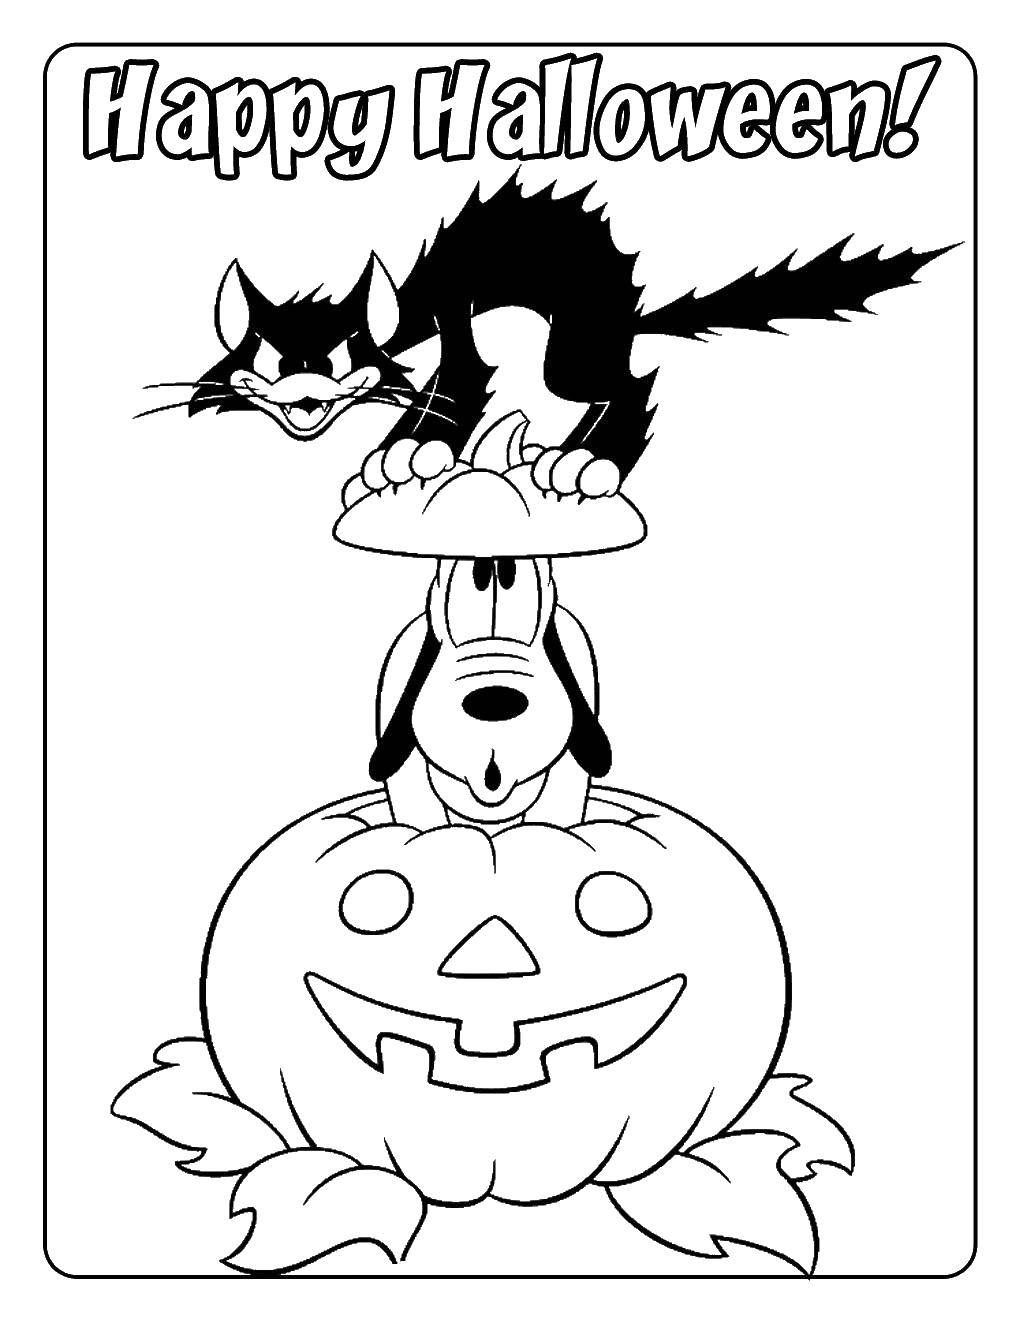 Название: Раскраска Плуто и кошка на хэллоуин. Категория: Хэллоуин. Теги: Хэллоуин, плуто, кошка.